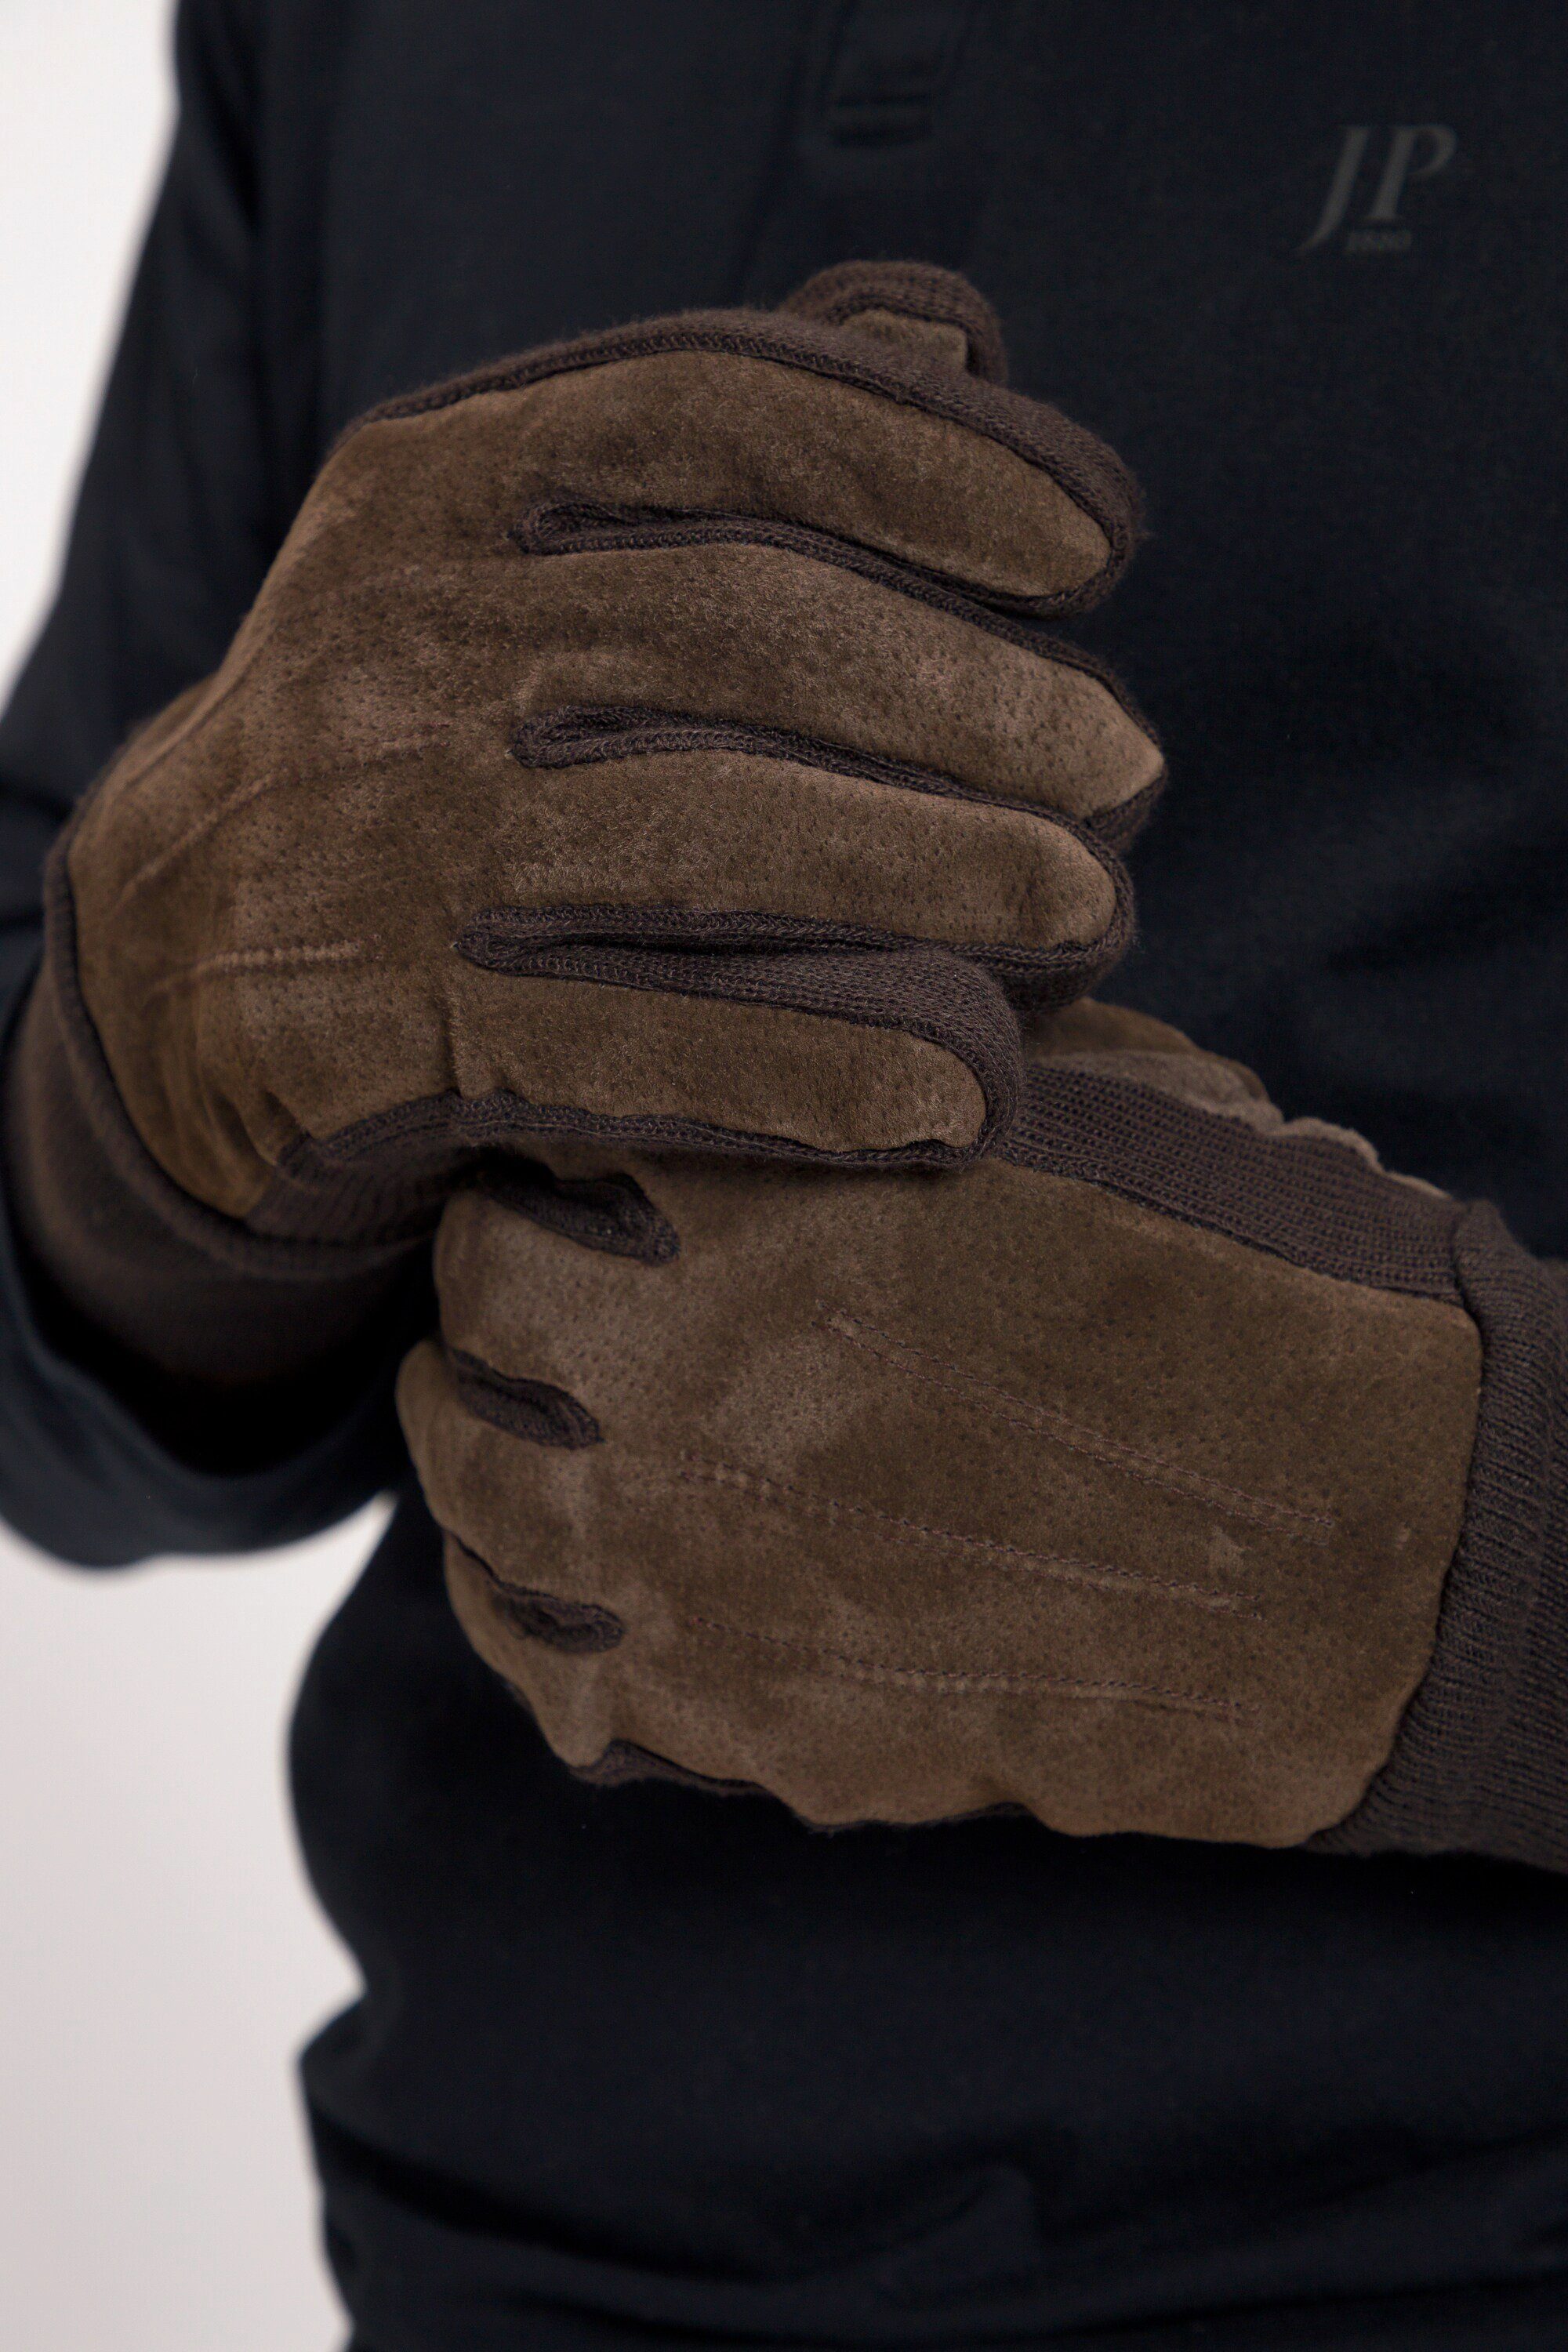 JP1880 Strickhandschuhe Leder-Handschuhe Strick-Einsätze braun Veloursleder